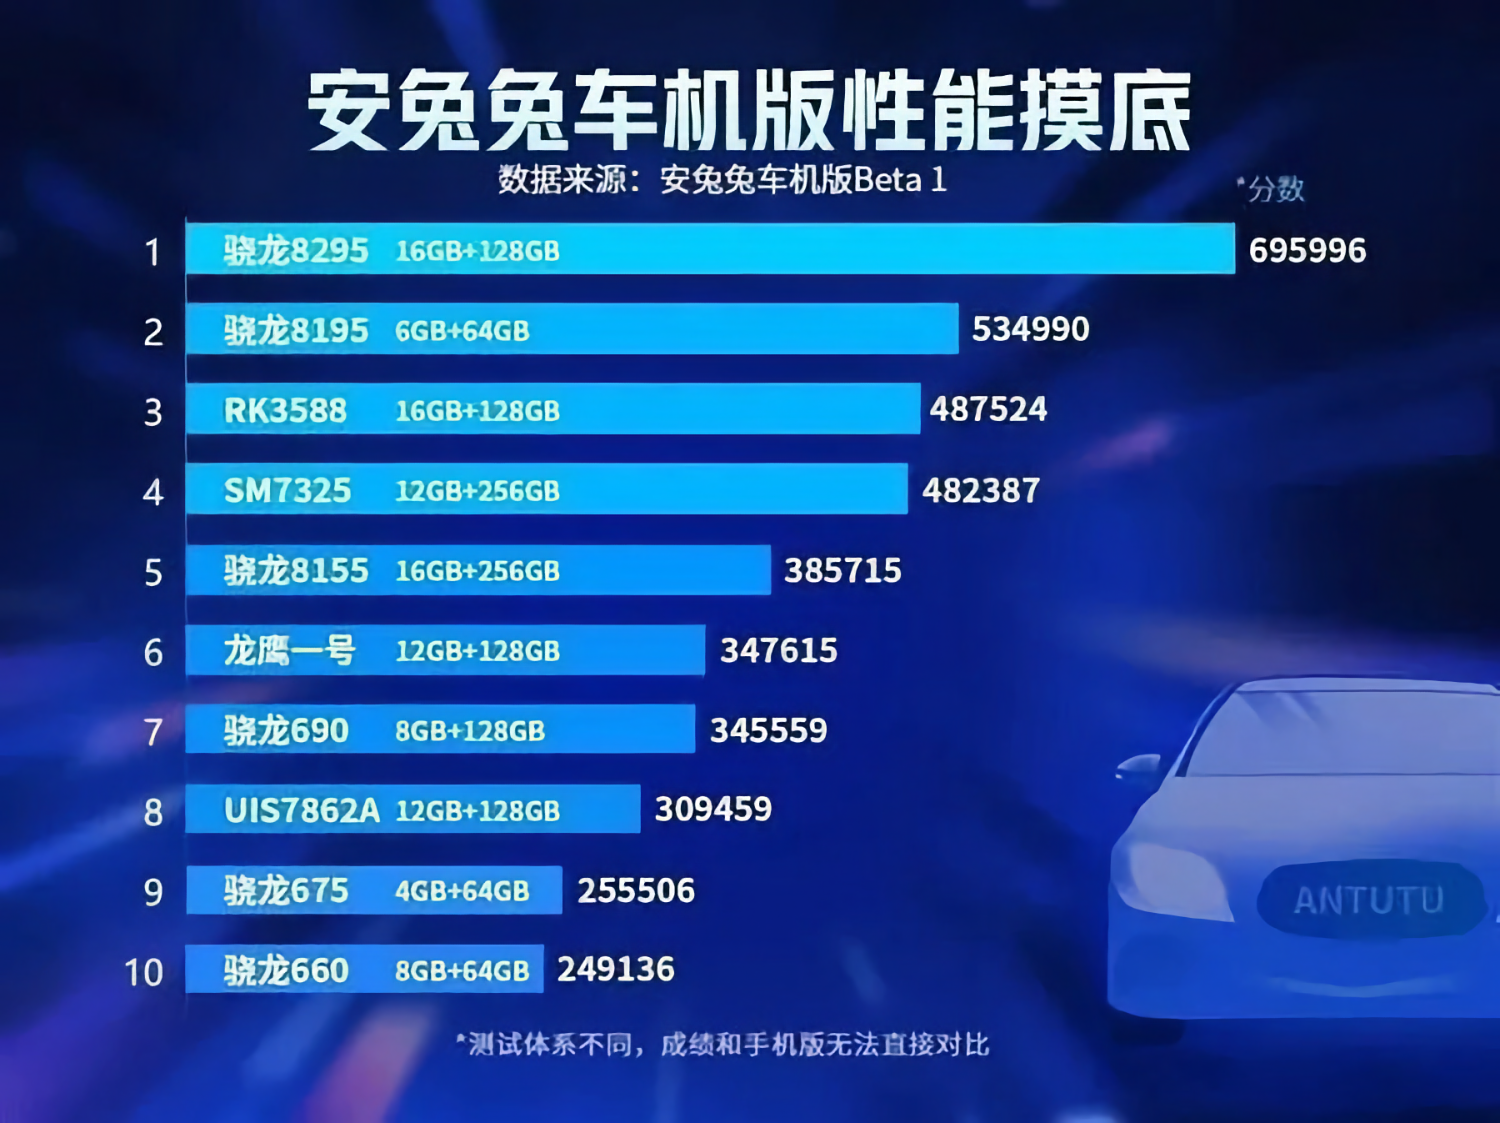 Популярный бенчмарк AnTuTu опубликовал первый в истории рейтинг самых мощных автомобильных процессоров